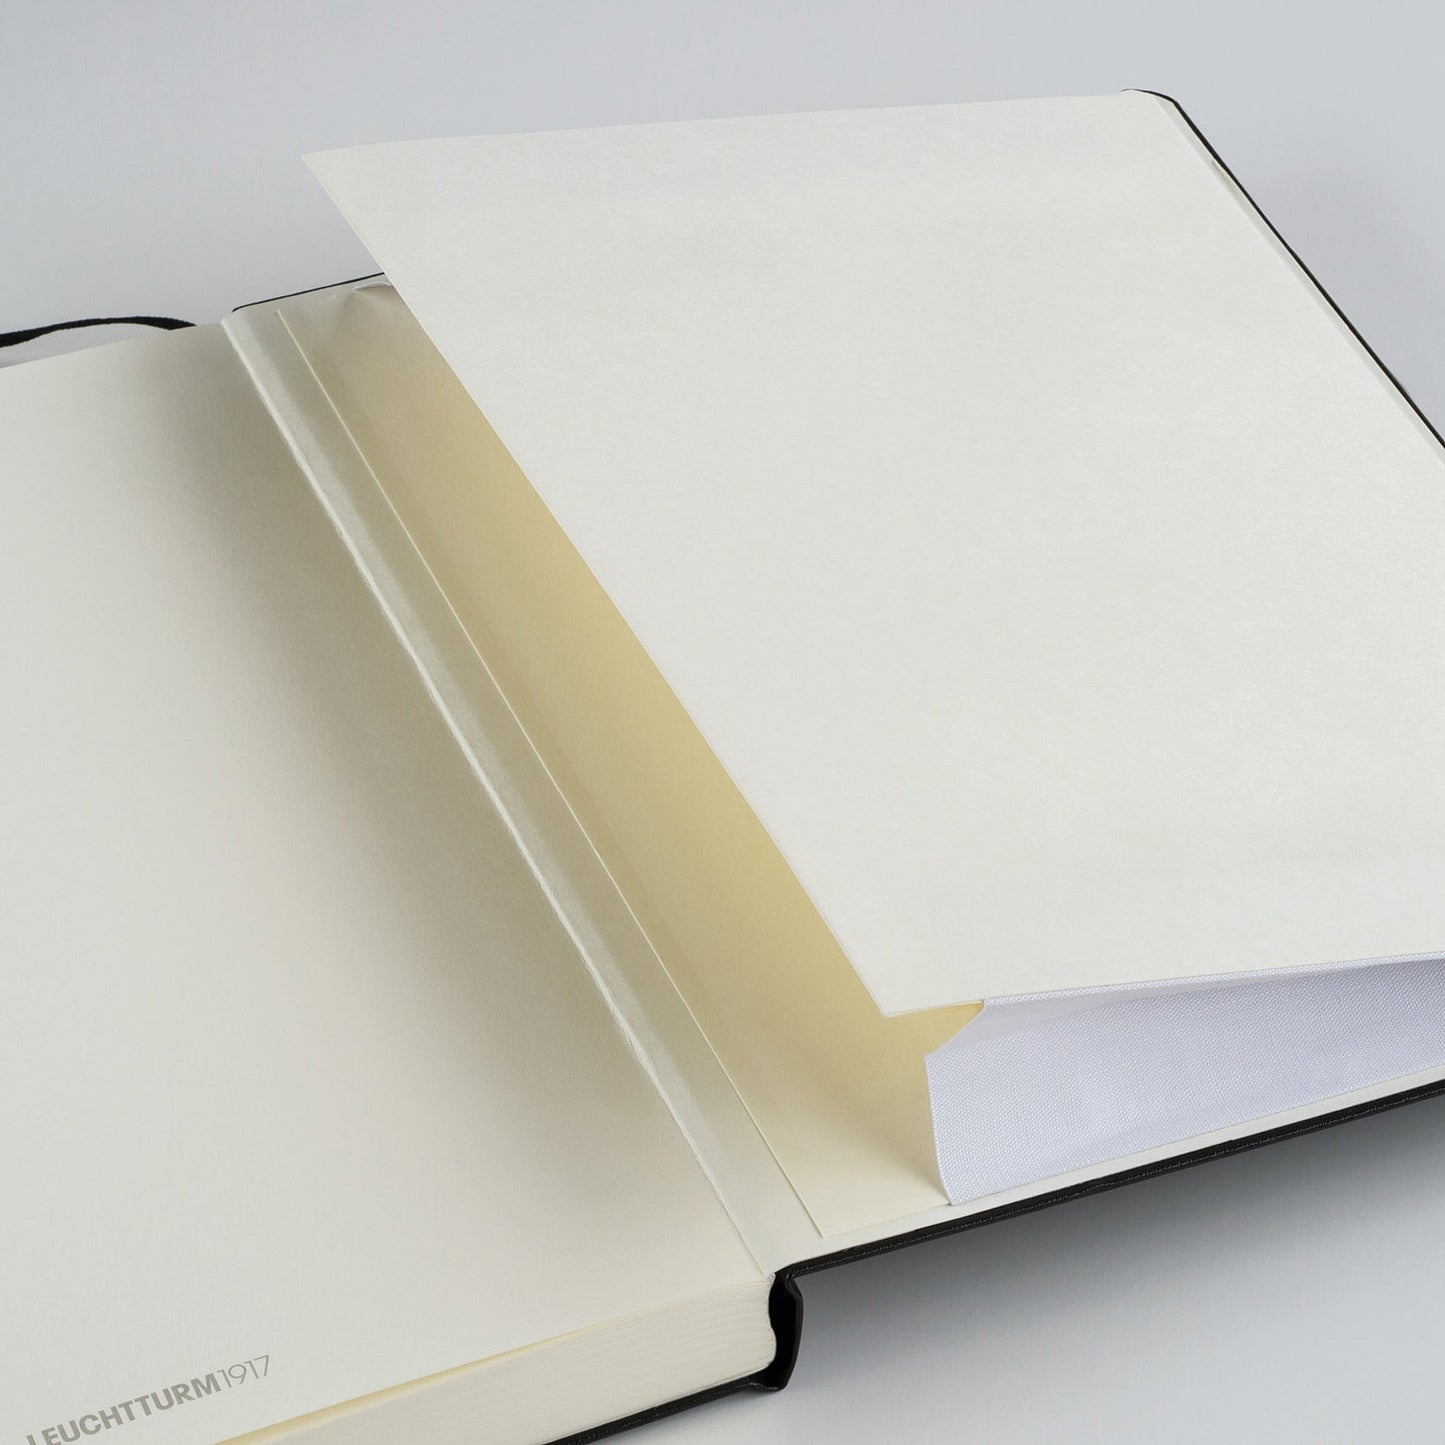 Leuchtturm1917 A5 Medium Softcover Notebook - Powder / Dotted